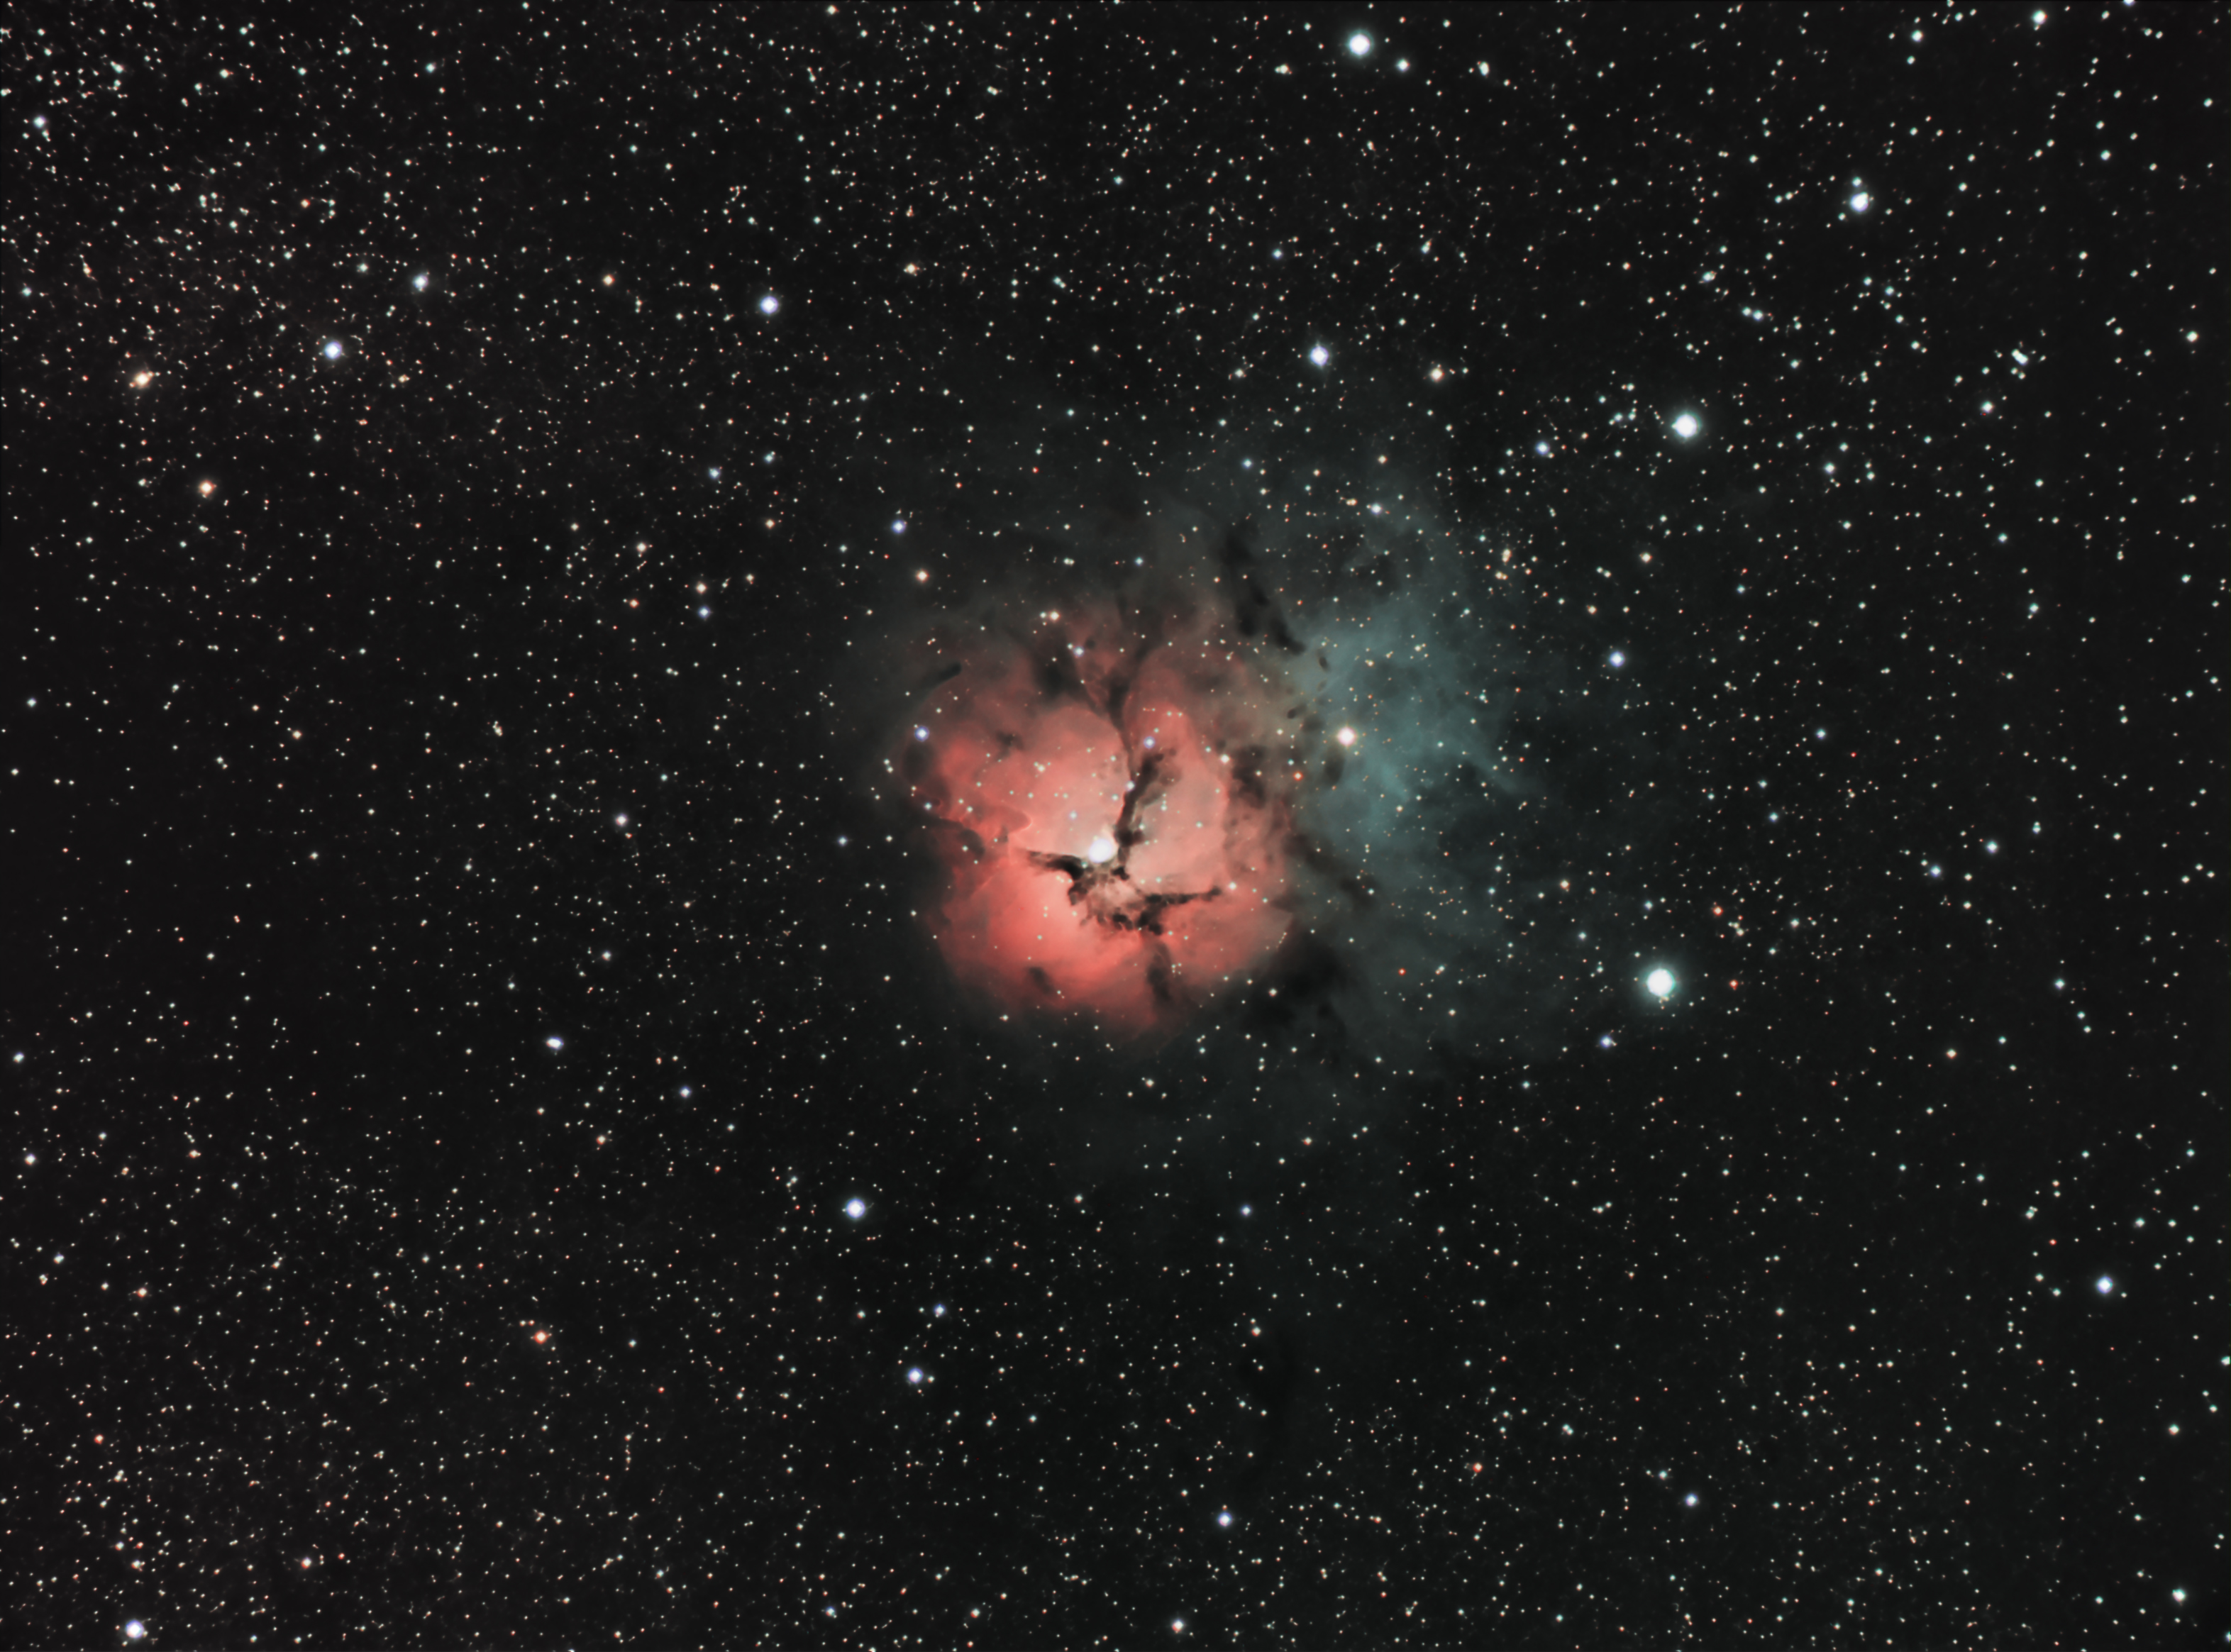 Trifid nebula M20